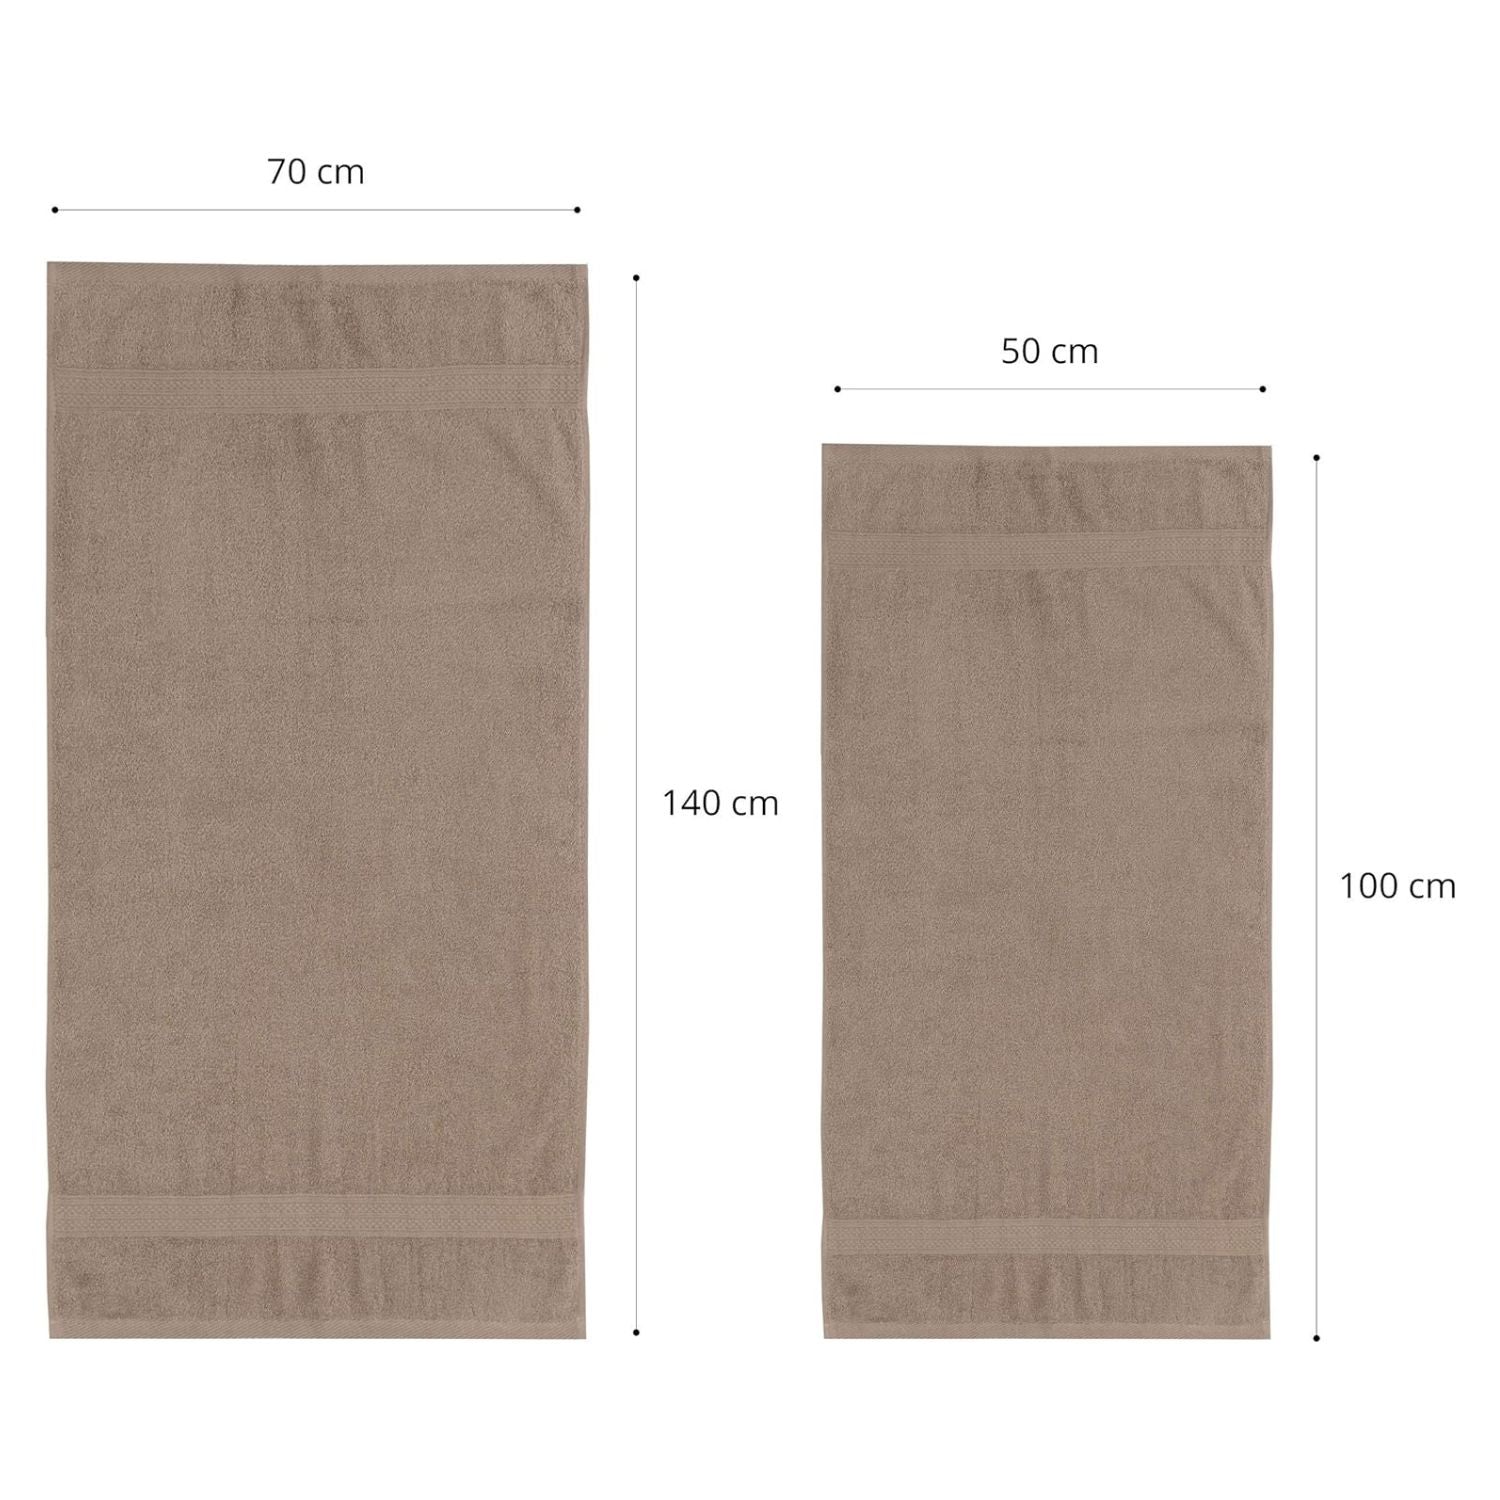 Premium Handtuch-Set - 4 Handtücher (50 x 100 cm) + 2 Badetücher (70 x 140 cm) - Taupe